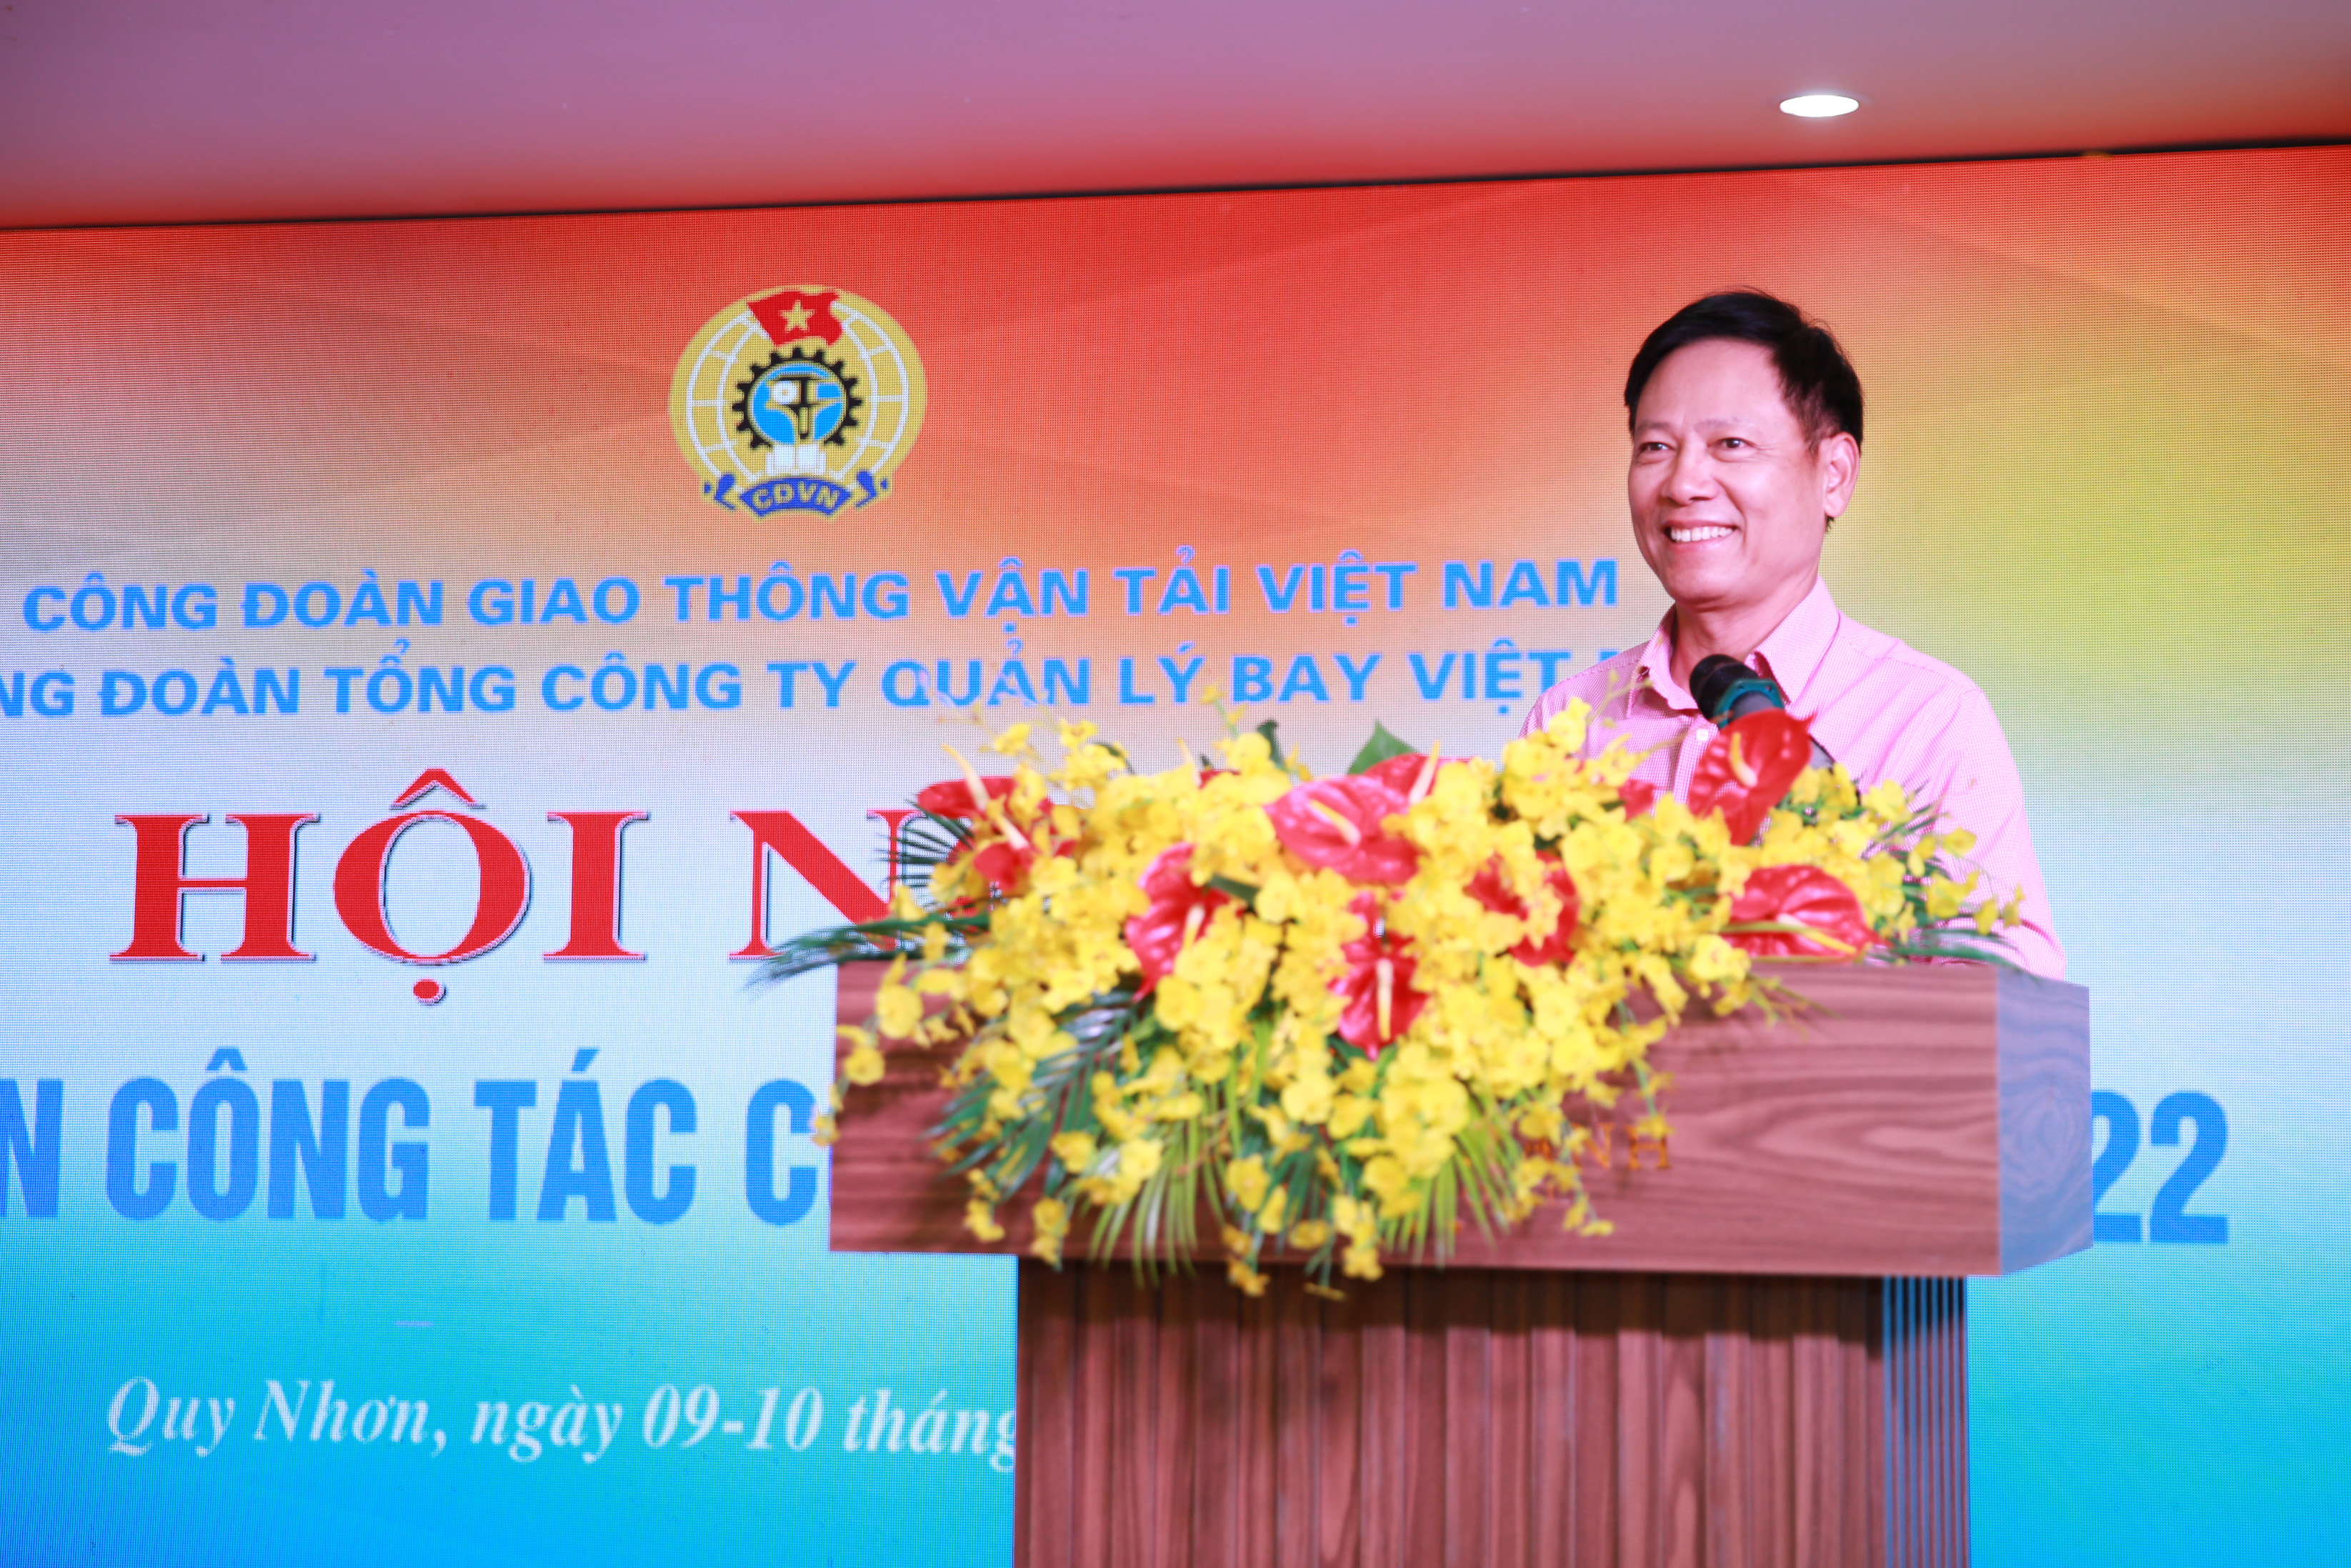 Công đoàn Tổng công ty Quản lý bay Việt Nam tổ chức tập huấn công tác Công đoàn năm 2022